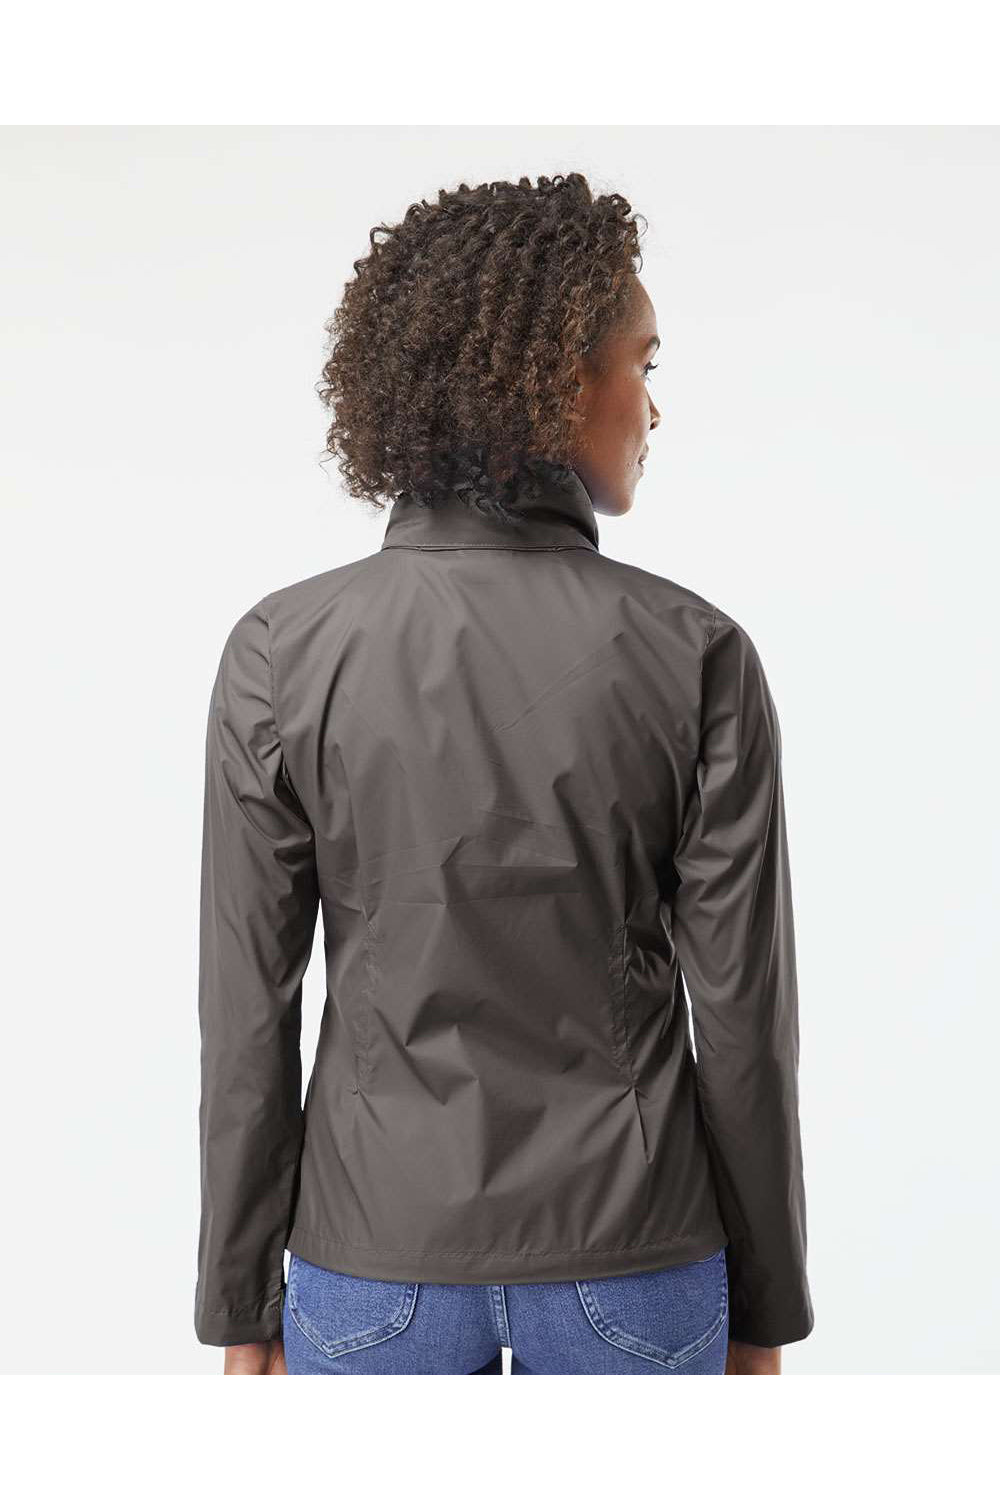 Columbia 177196 Womens Switchback III Full Zip Hooded Jacket City Grey Model Back